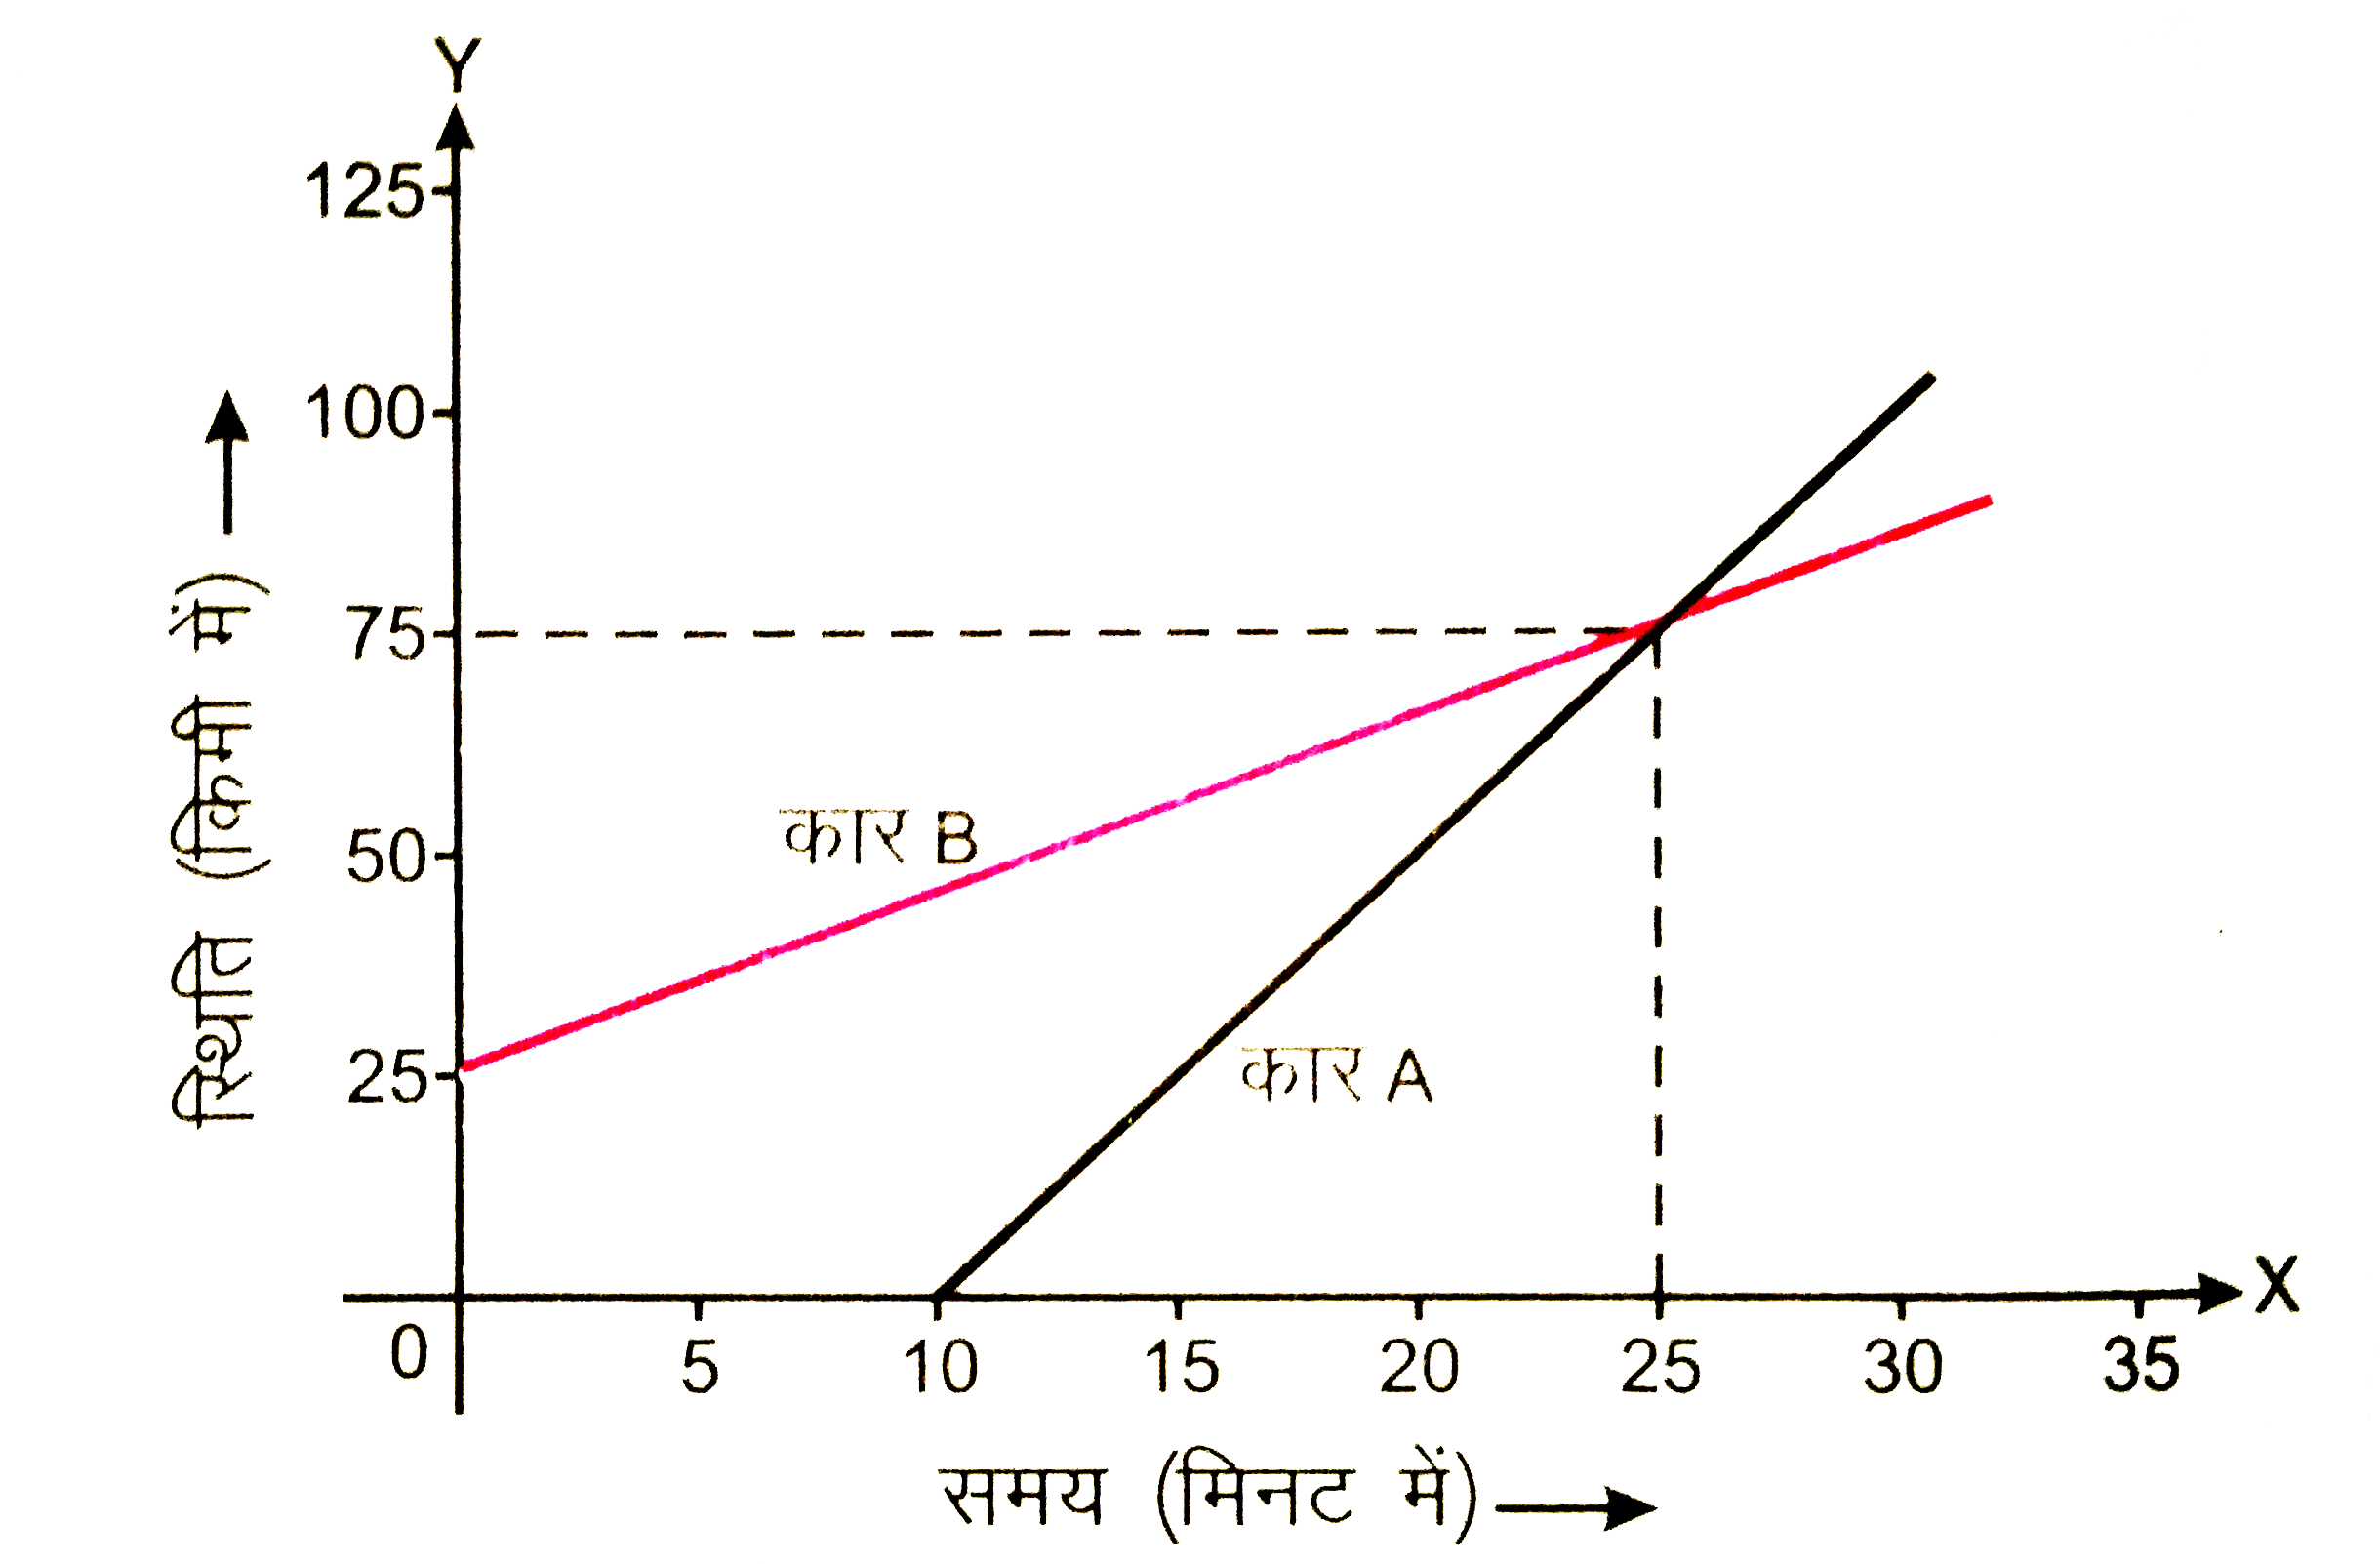 चित्र 3.22 में दो कारों A तथा B के लिए स्थिति - समय ग्राफ दर्शाया  गया है ज्ञात कीजिए :   चलना प्रारम्भ करने के कितने समय बाद कार A, कार B से आगे निकल जाती है ?